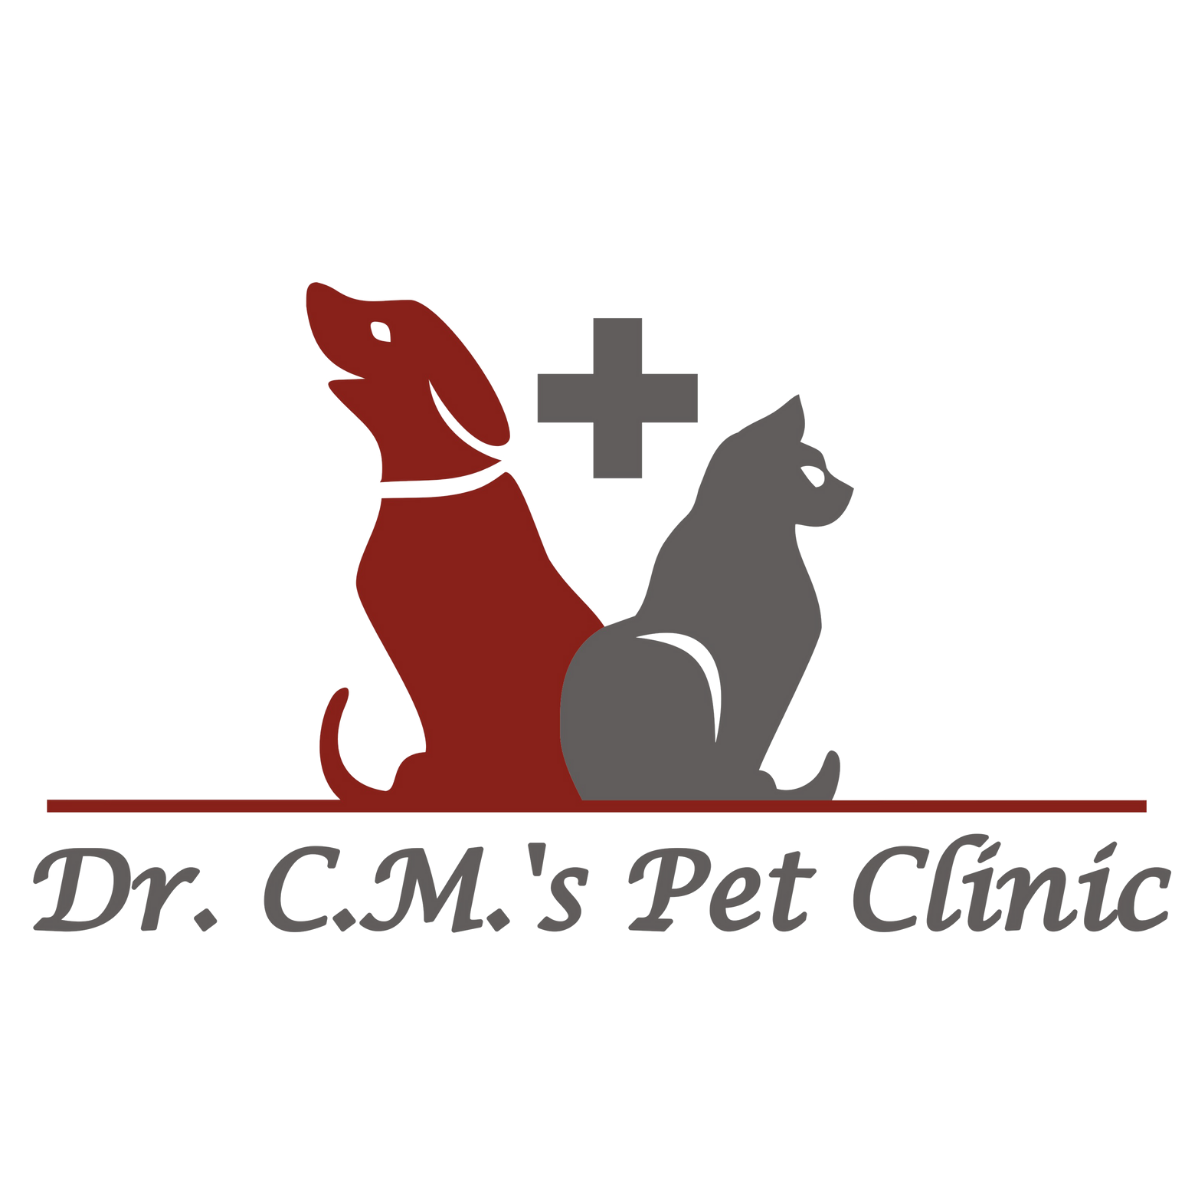 Dr.C.M.'s Pet Clinic|Diagnostic centre|Medical Services